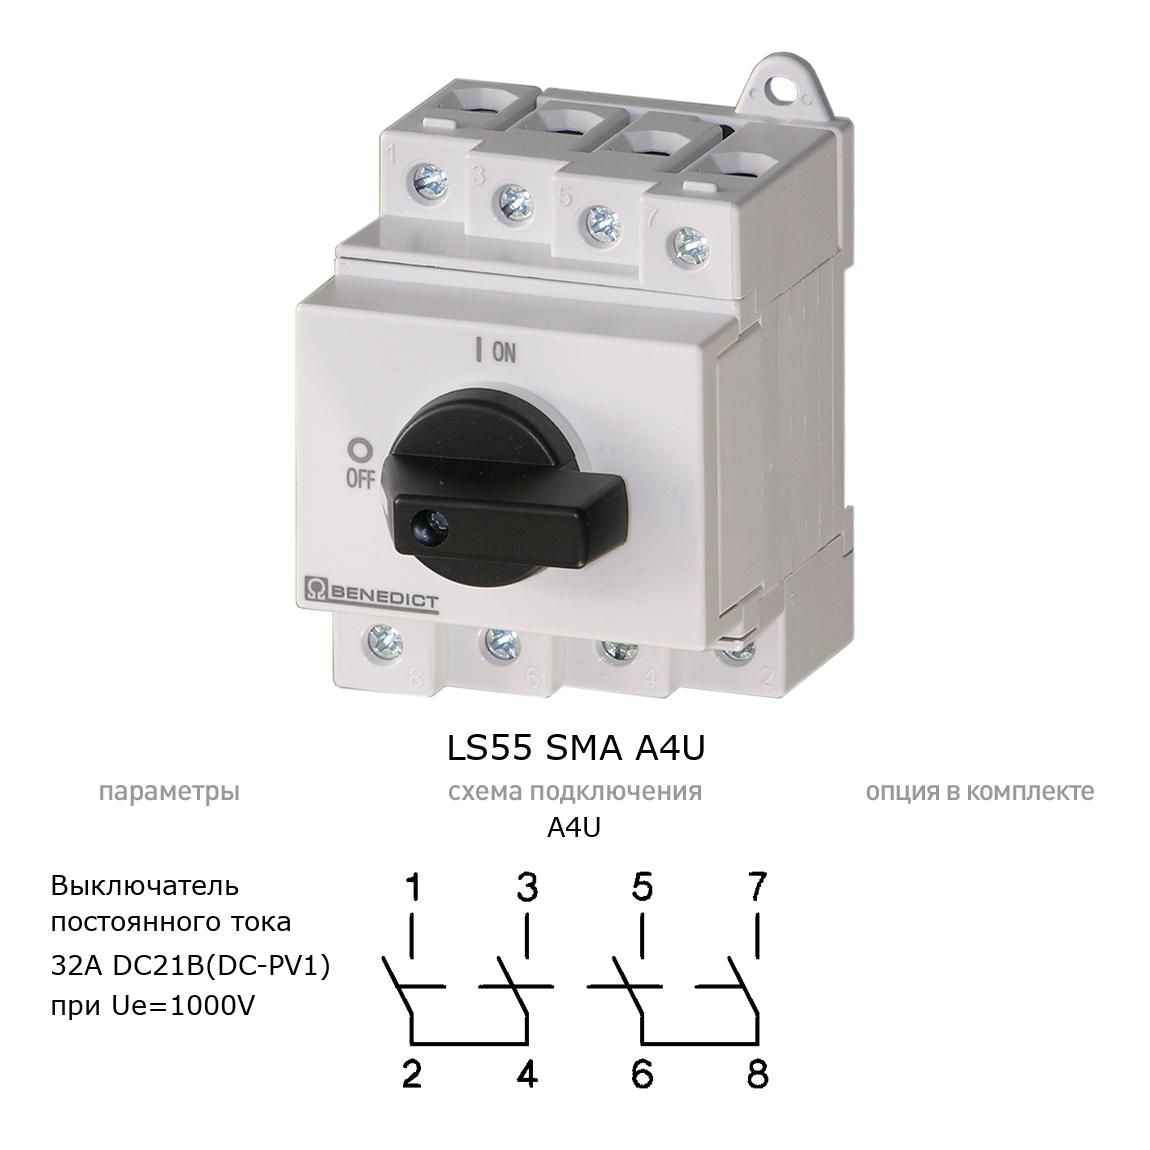 Кулачковый переключатель для постоянного тока (DC) LS55 SMA A4U BENEDICT